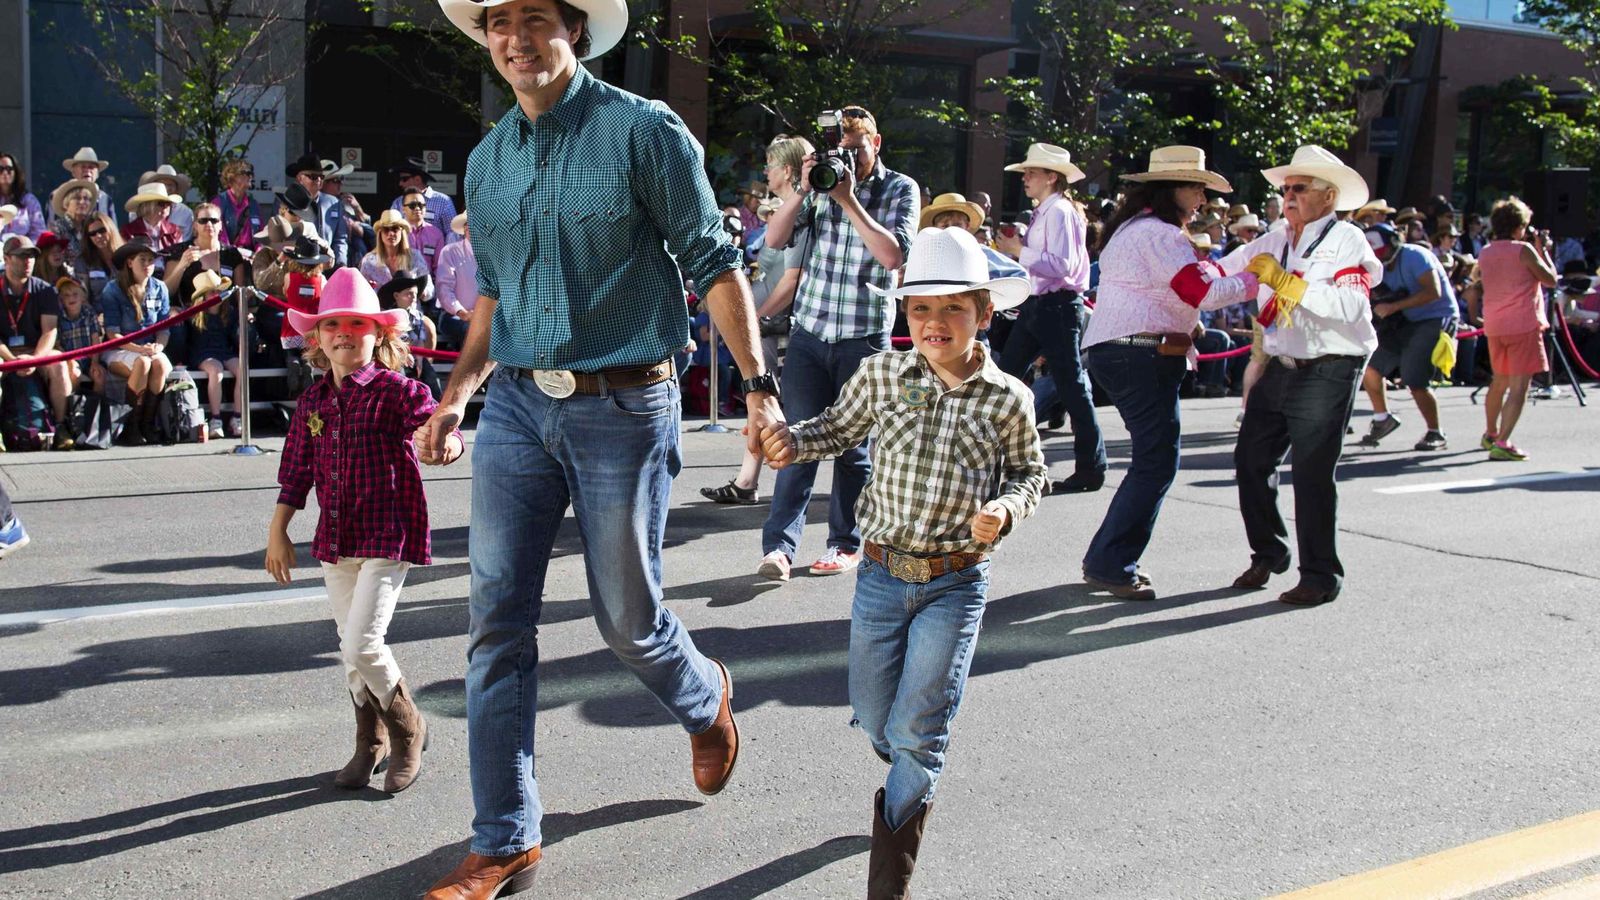 Foto: Trudeau pasea con sus hijos durante un desfile en Calgary, Alberta, el 4 de julio de 2014 (Reuters).